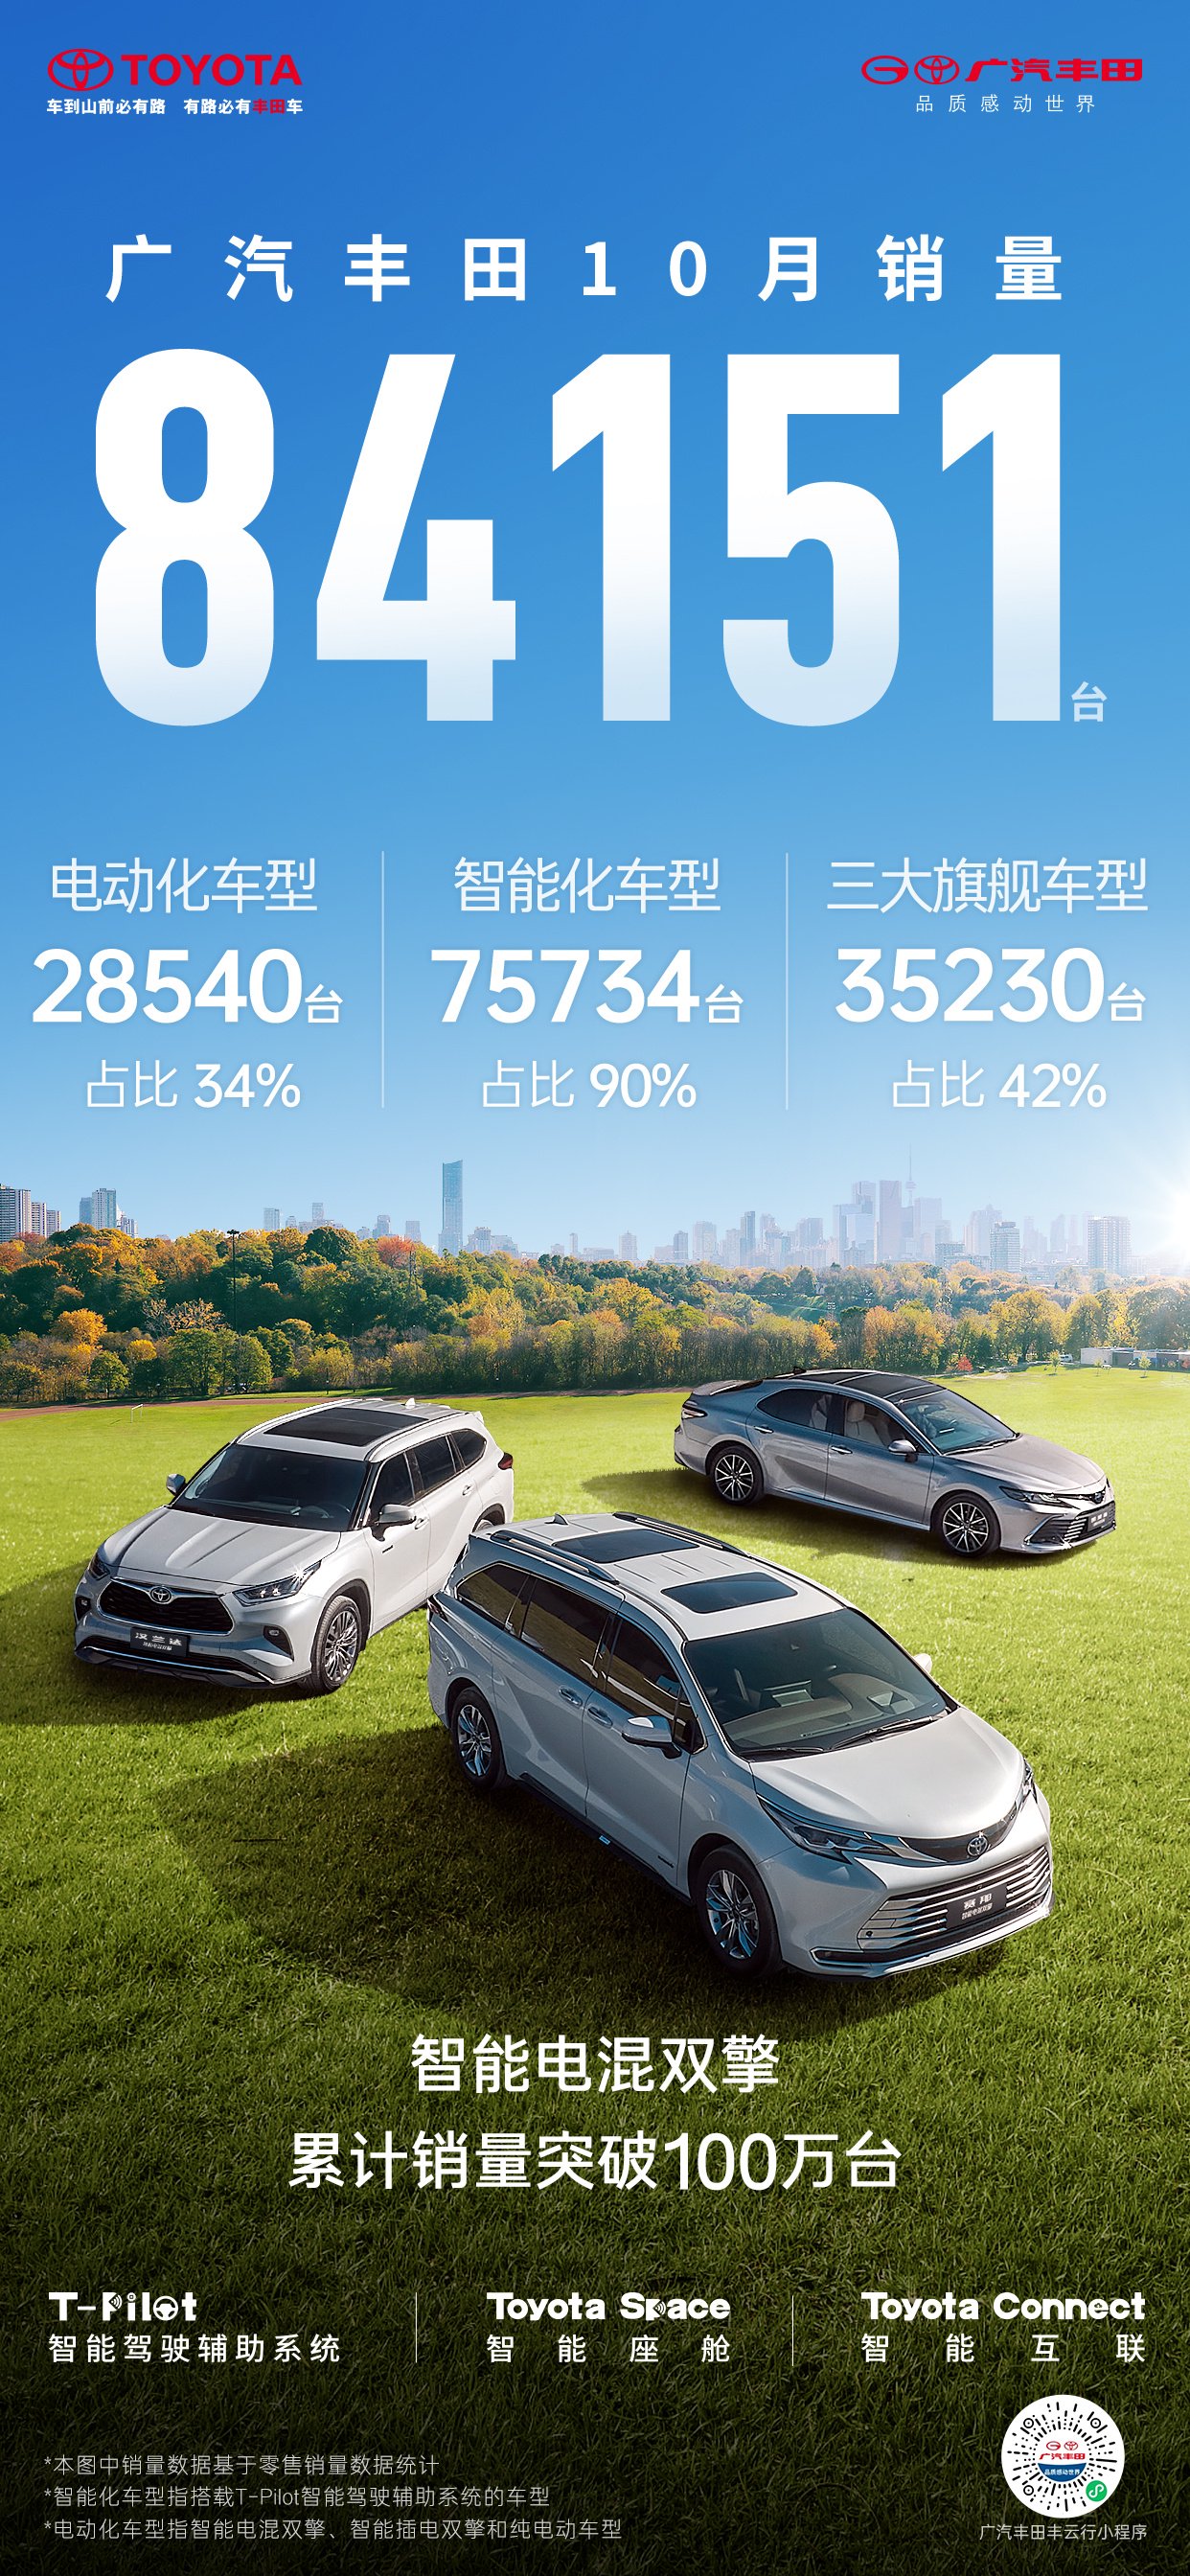 广汽丰田 10 月销量 84151 辆，“智能电混双擎”车型累销超 100 万辆